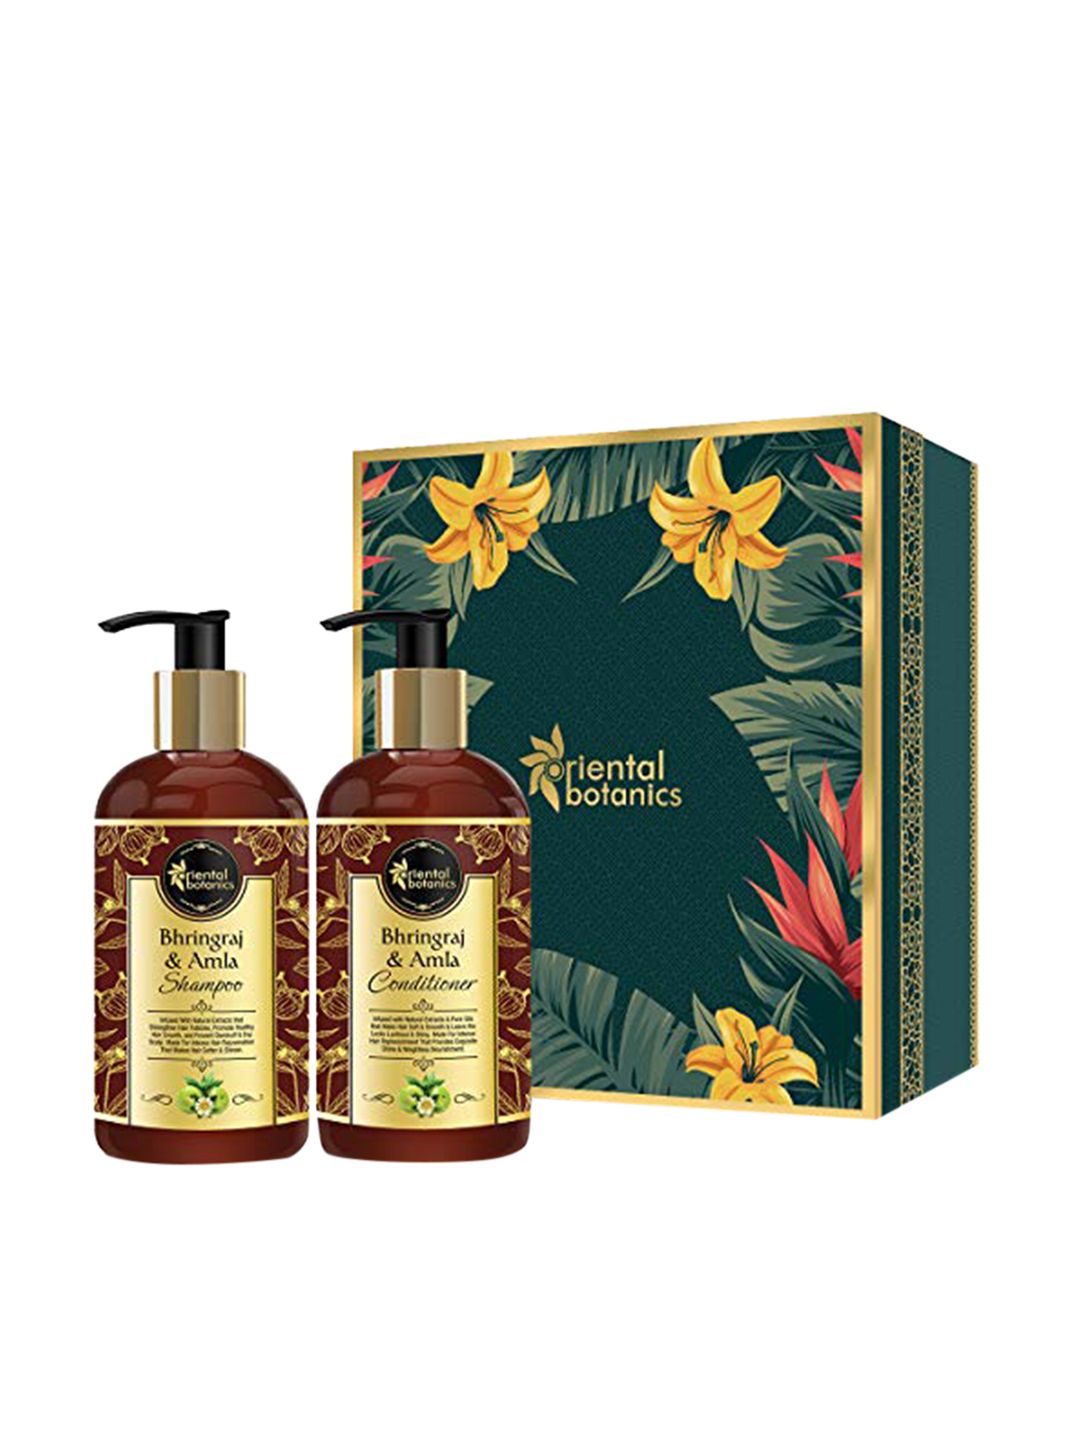 Oriental Botanics Bhringraj & Amla Hair Shampoo & Conditioner Price in India